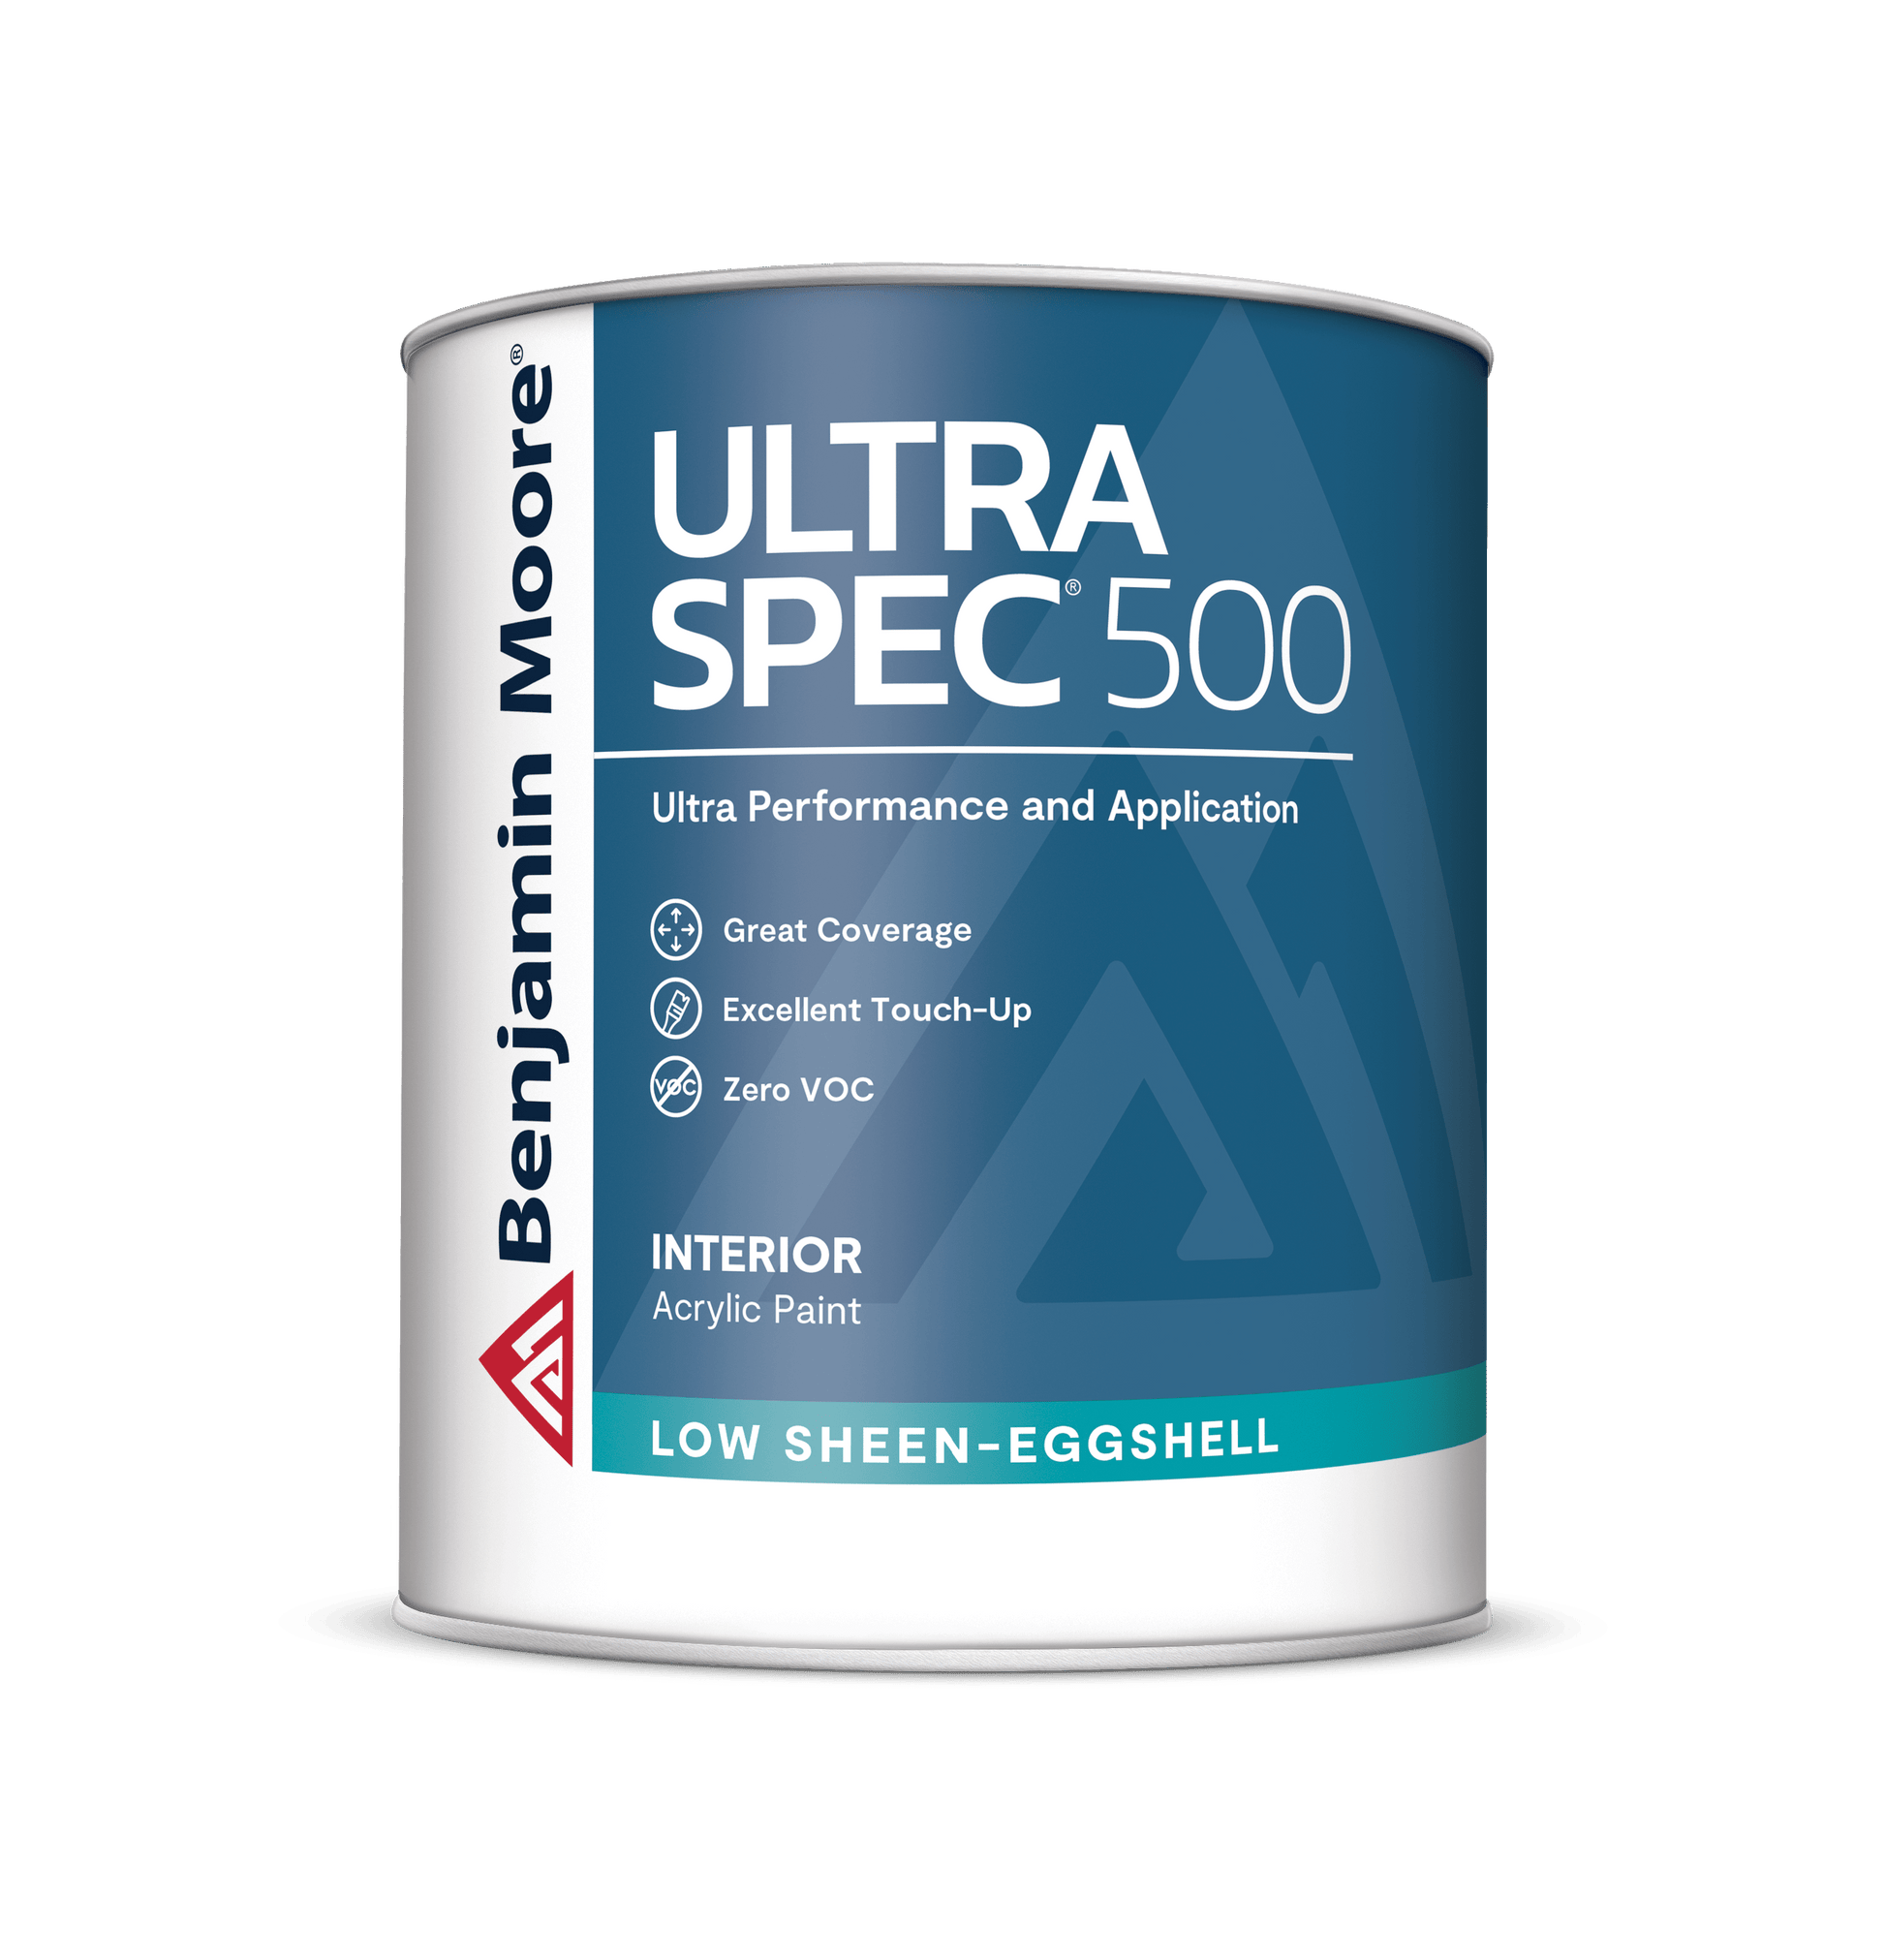 Benjamin Moore Ultra Spec 500 - Rossi Paint Stores - Low Sheen-Eggshell - Quart